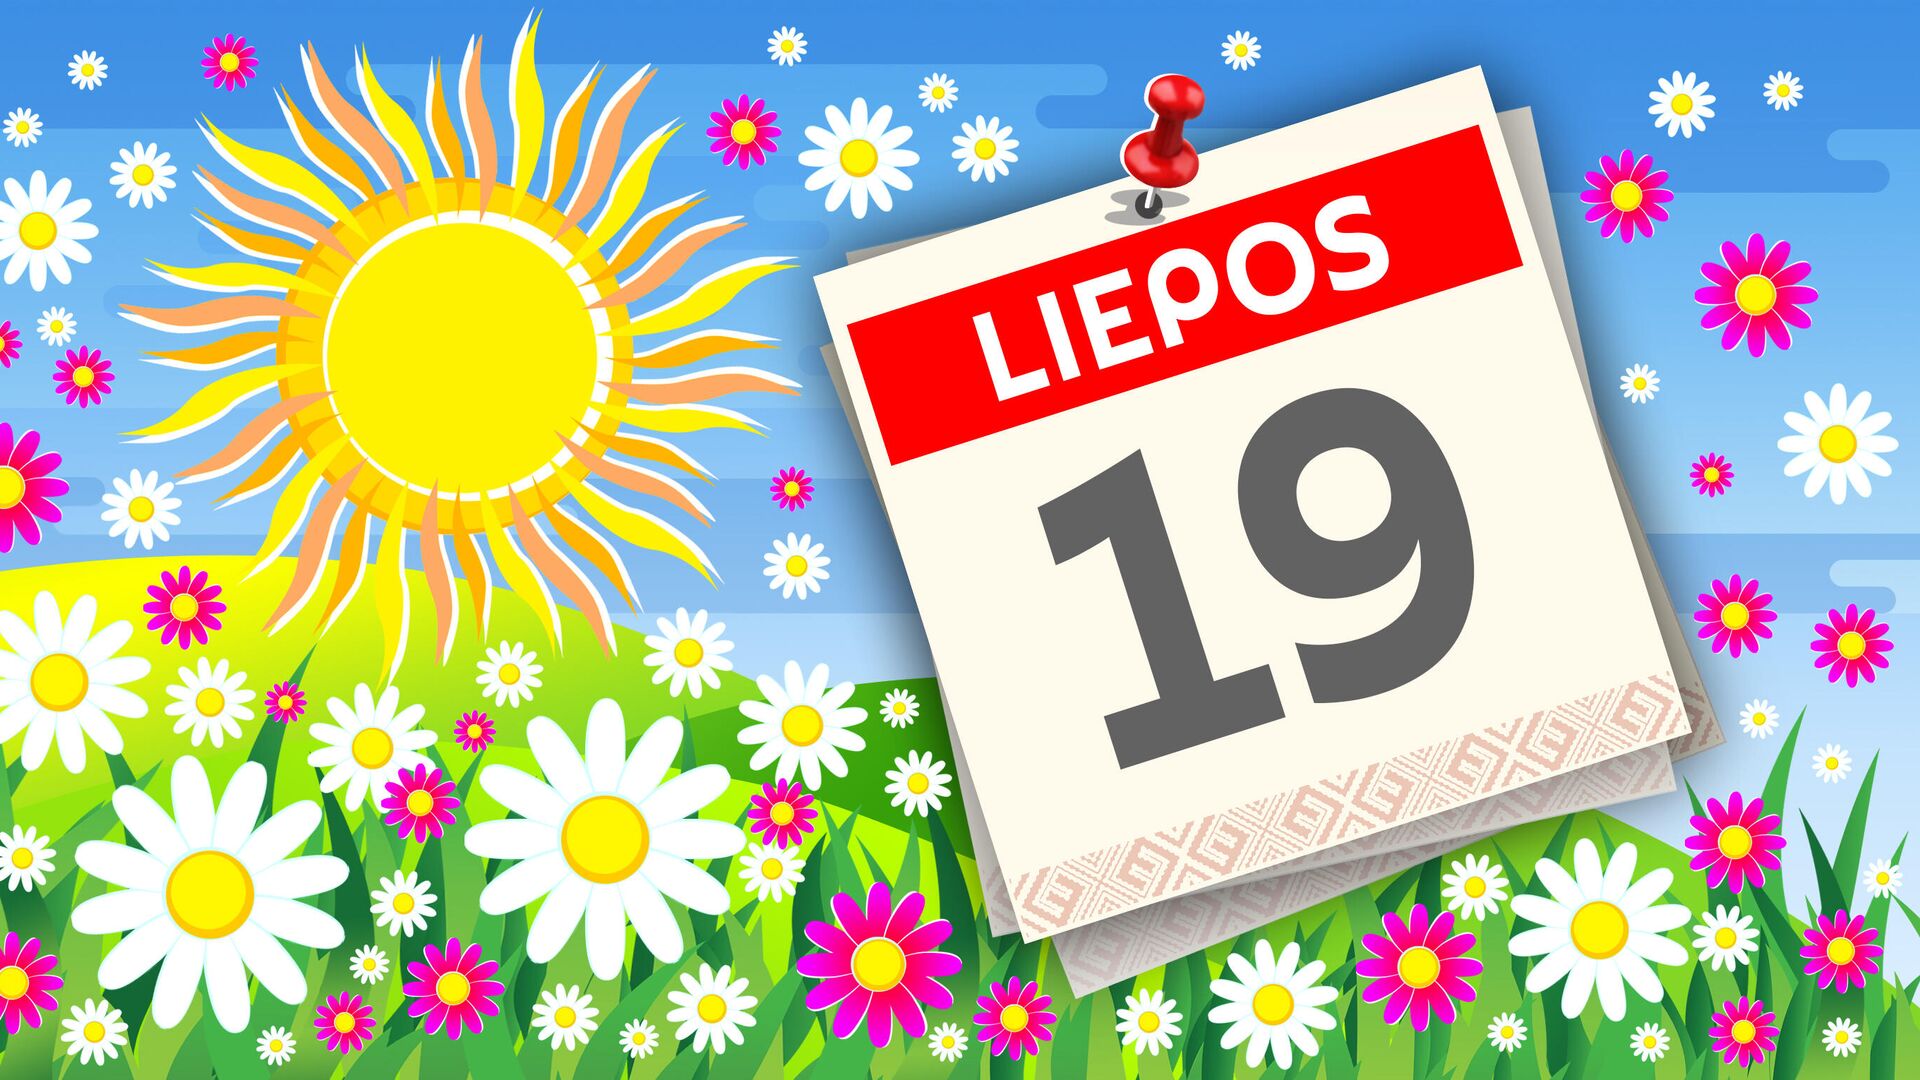 Kalendorius liepos 19 d. - Sputnik Lietuva, 1920, 19.07.2021